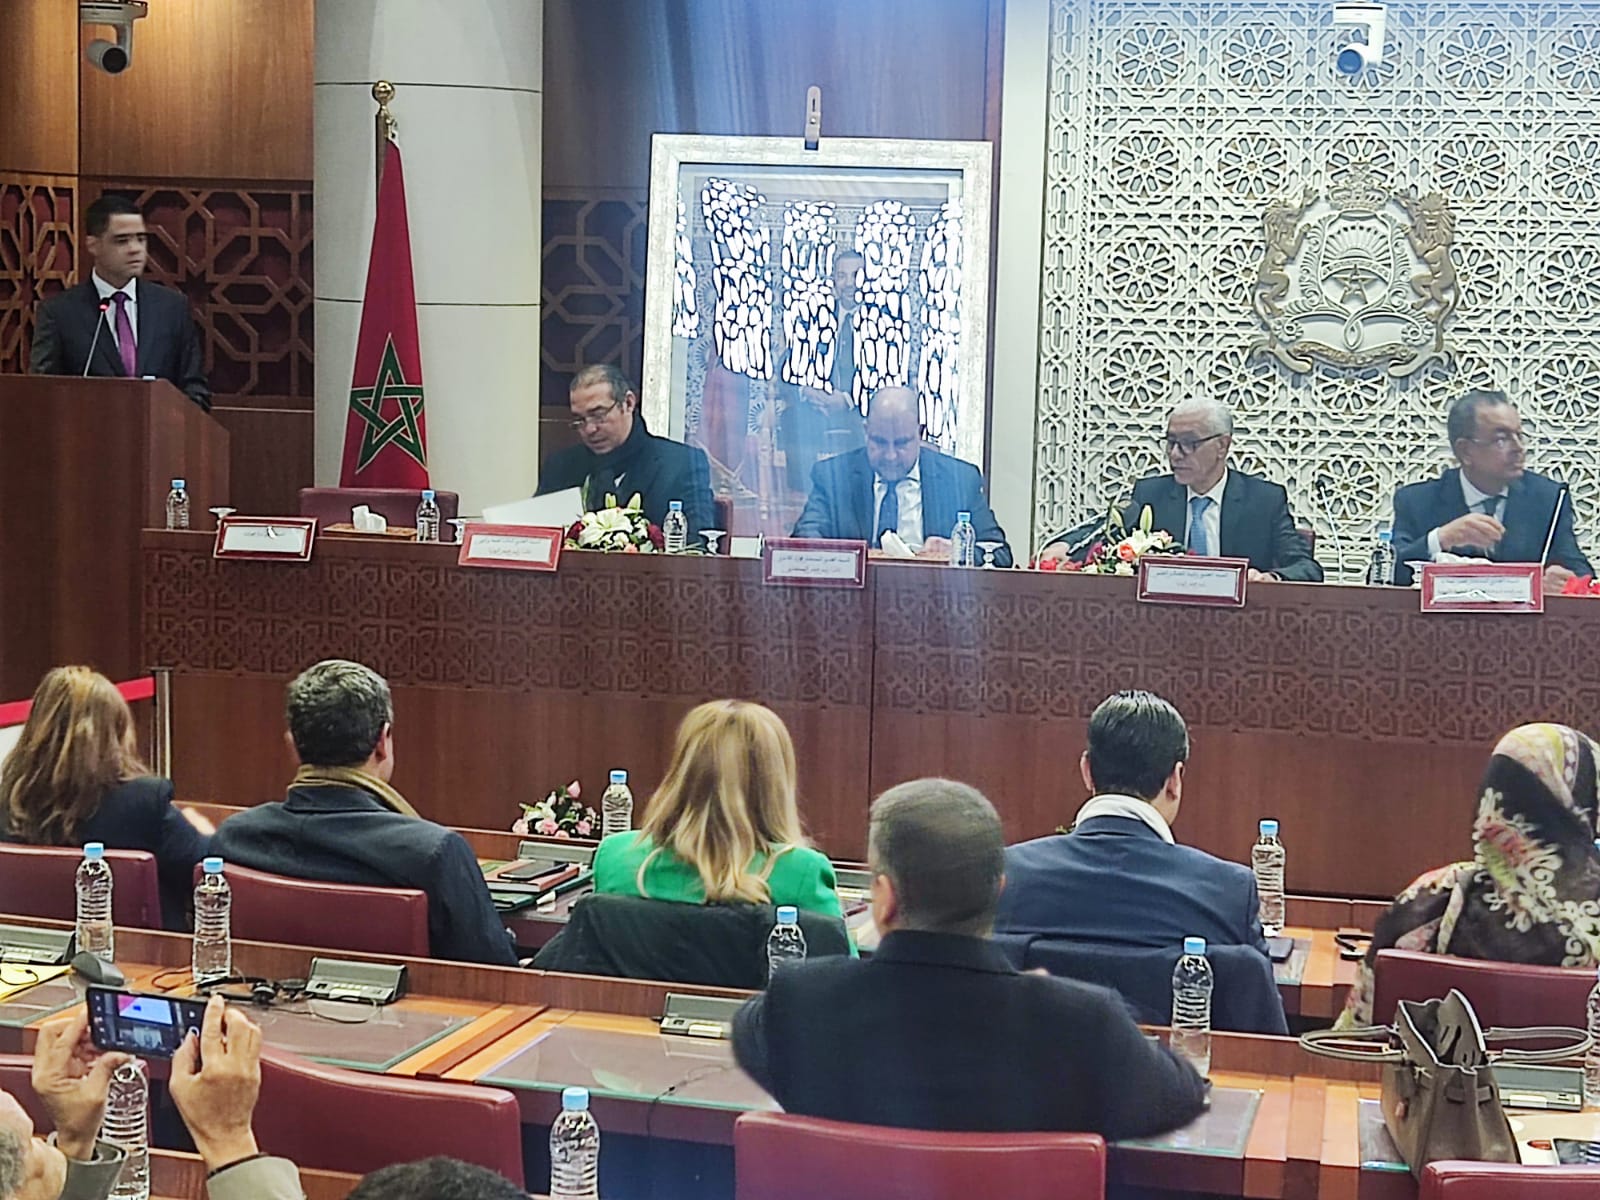 Le parlement marocain dénonce les positions hostiles des eurodéputés à l’encontre du Royaume